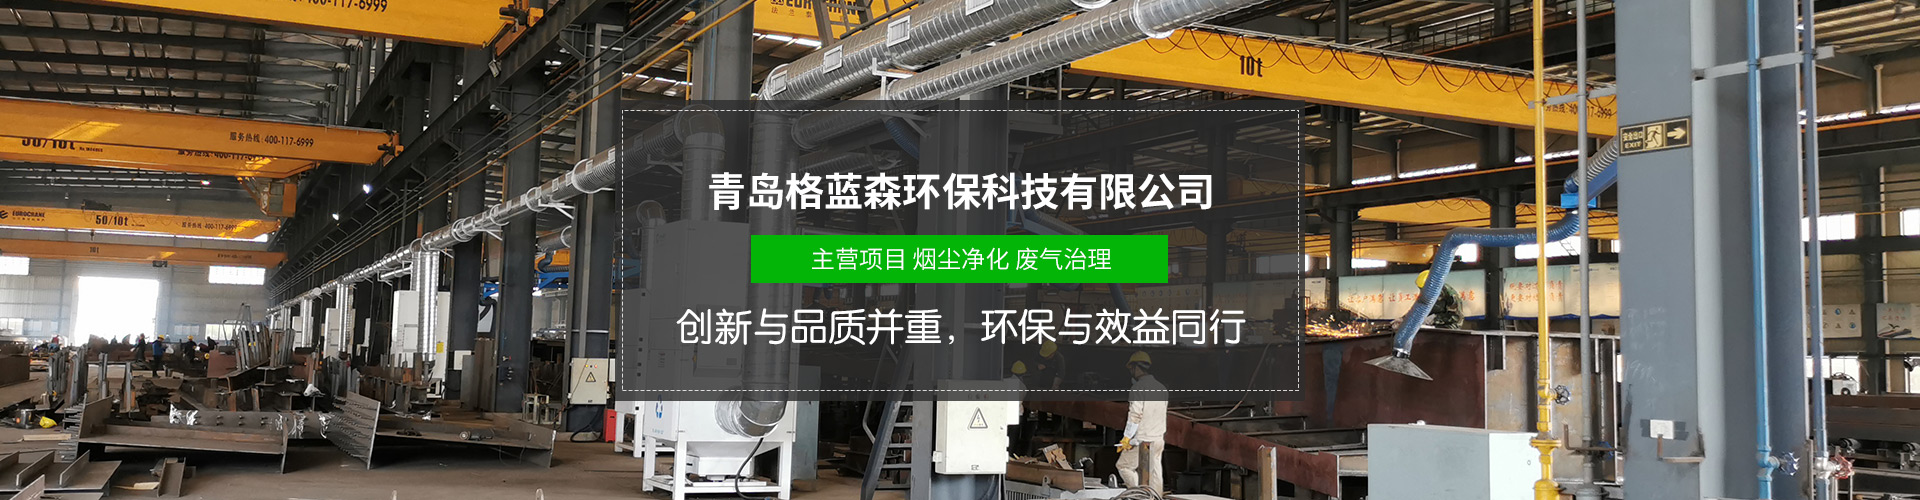 潍坊大型布袋除尘器厂家 欢迎来电洽谈